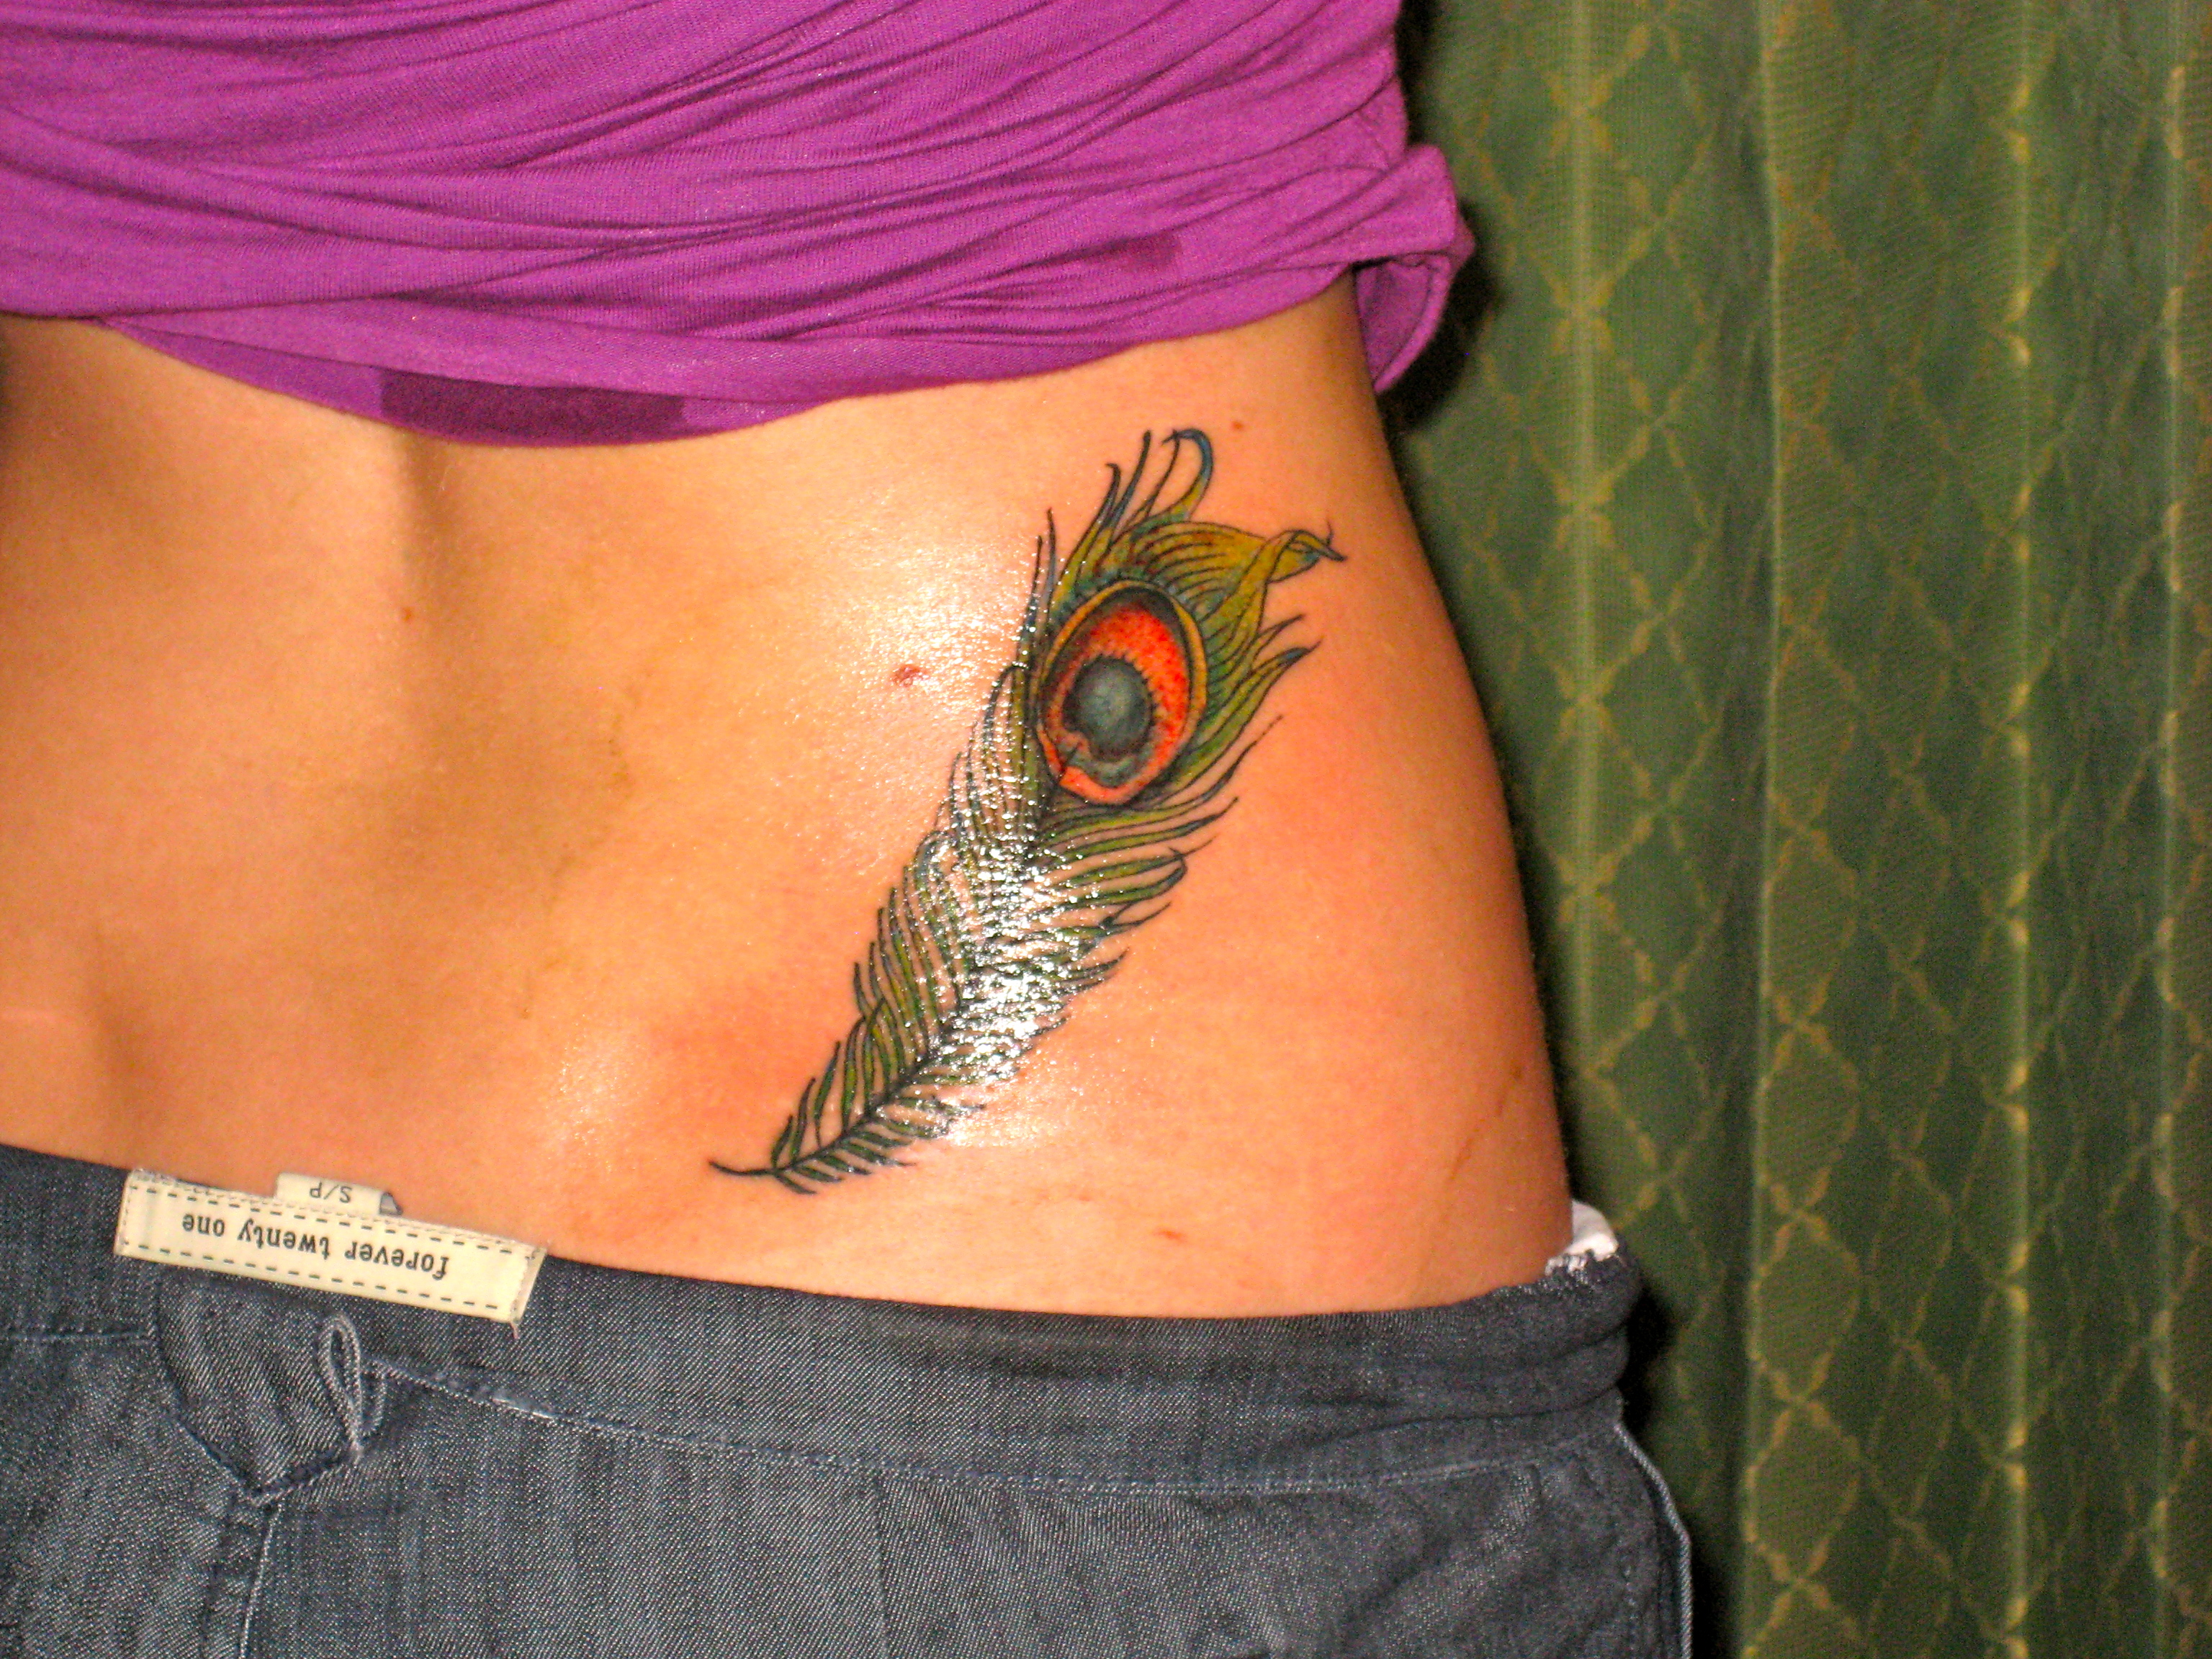 Peafowl tattoo on the arm - Tattoogrid.net